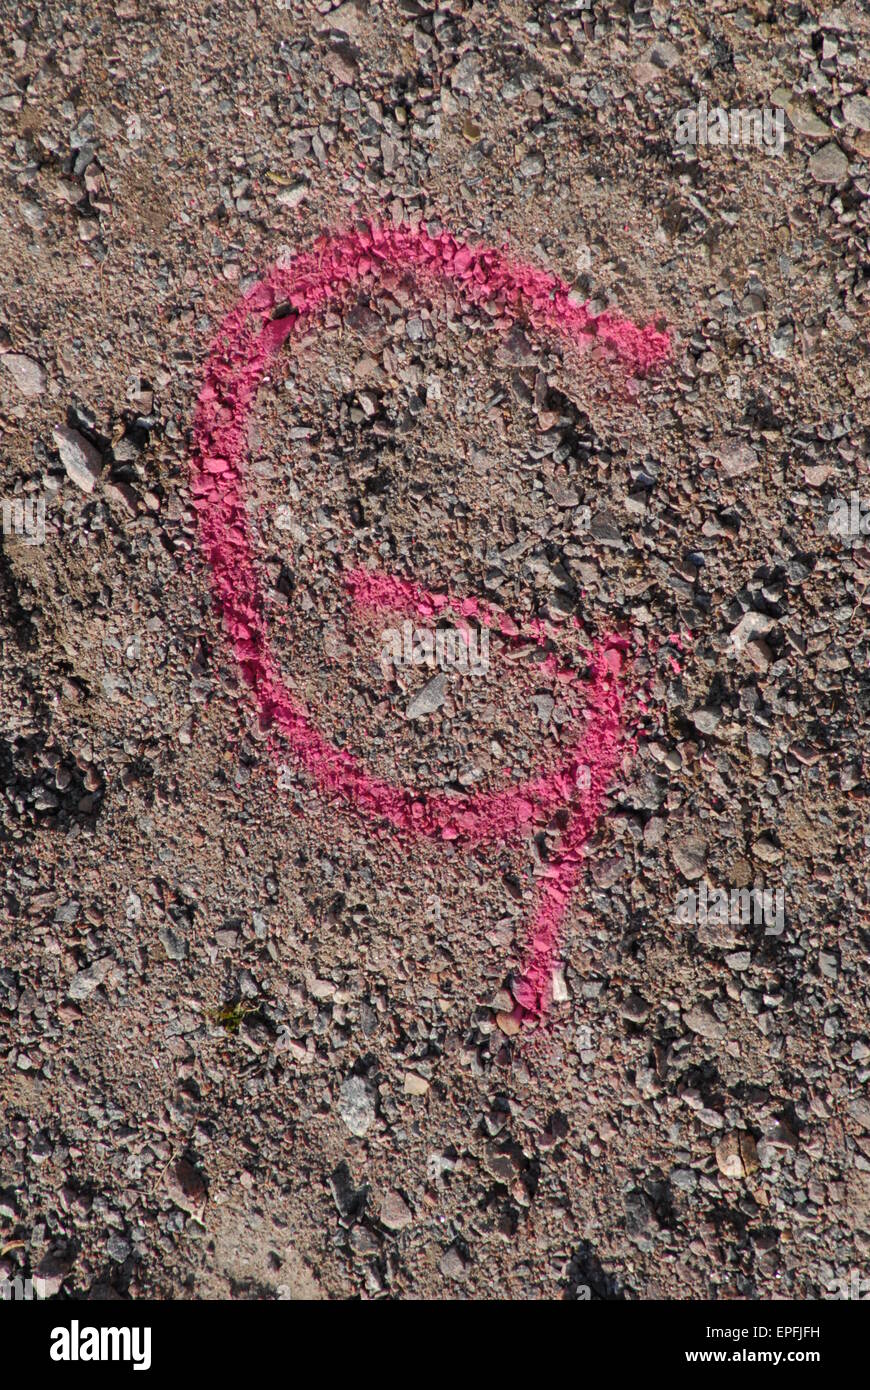 Rosa lettera G dipinta sul terreno marcare un punto. Foto Stock